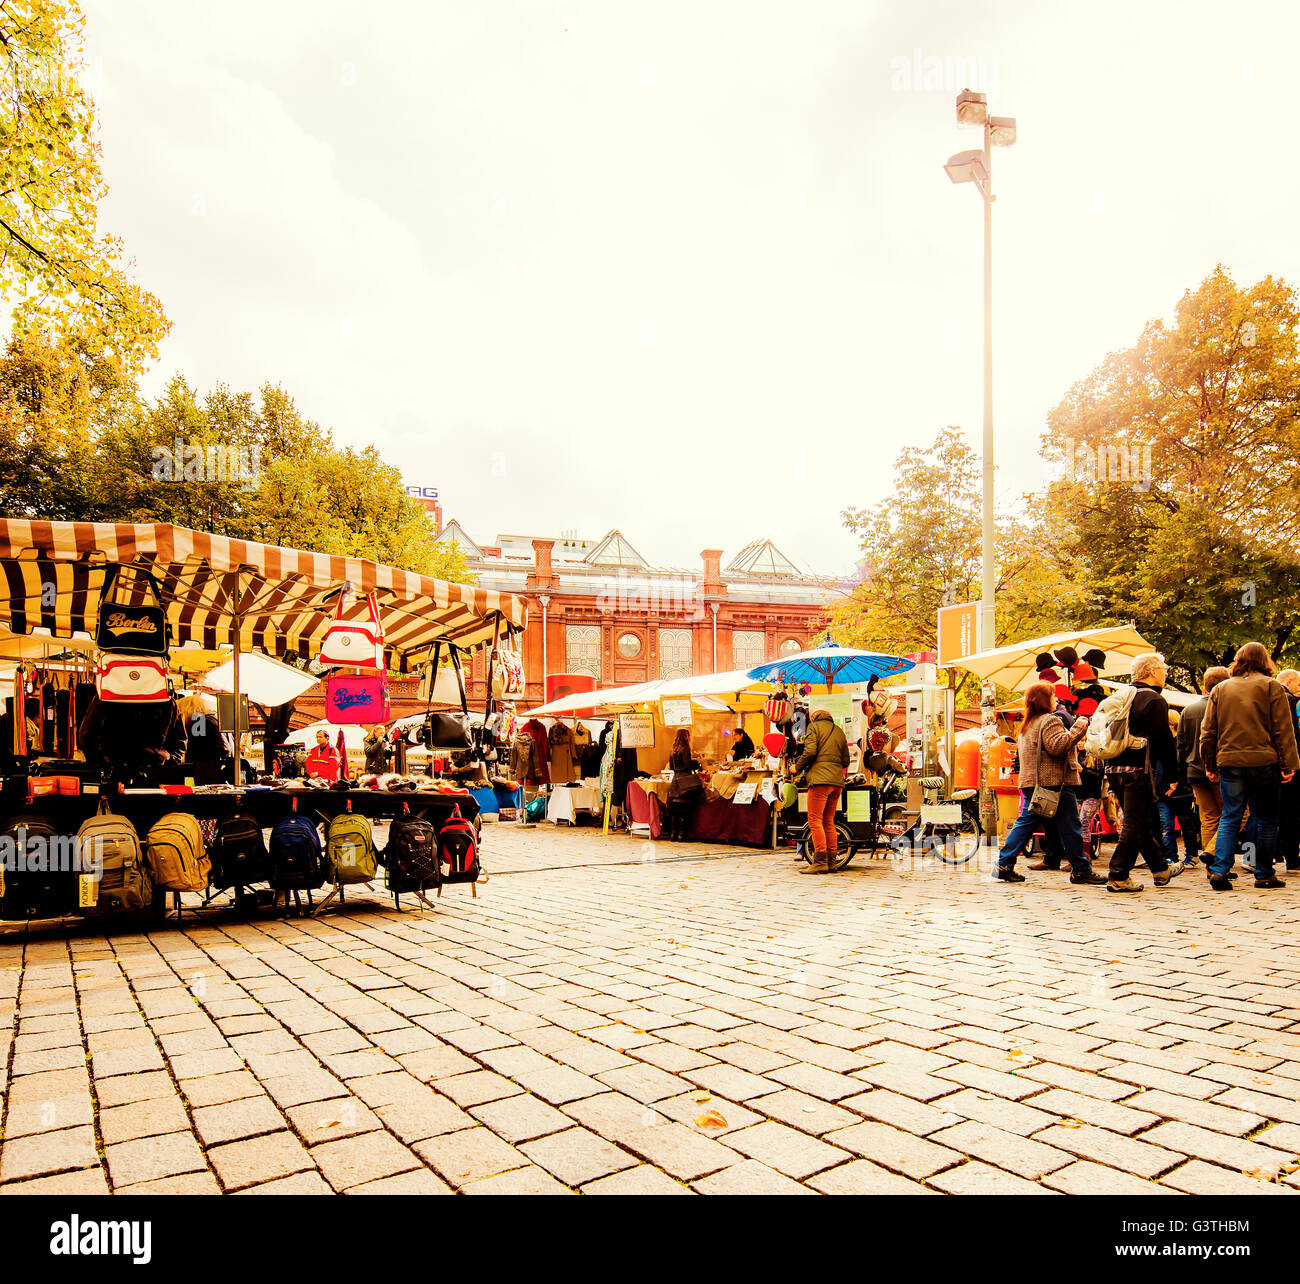 Germany, Berlin, Hackescher markt, View of market stalls Stock Photo